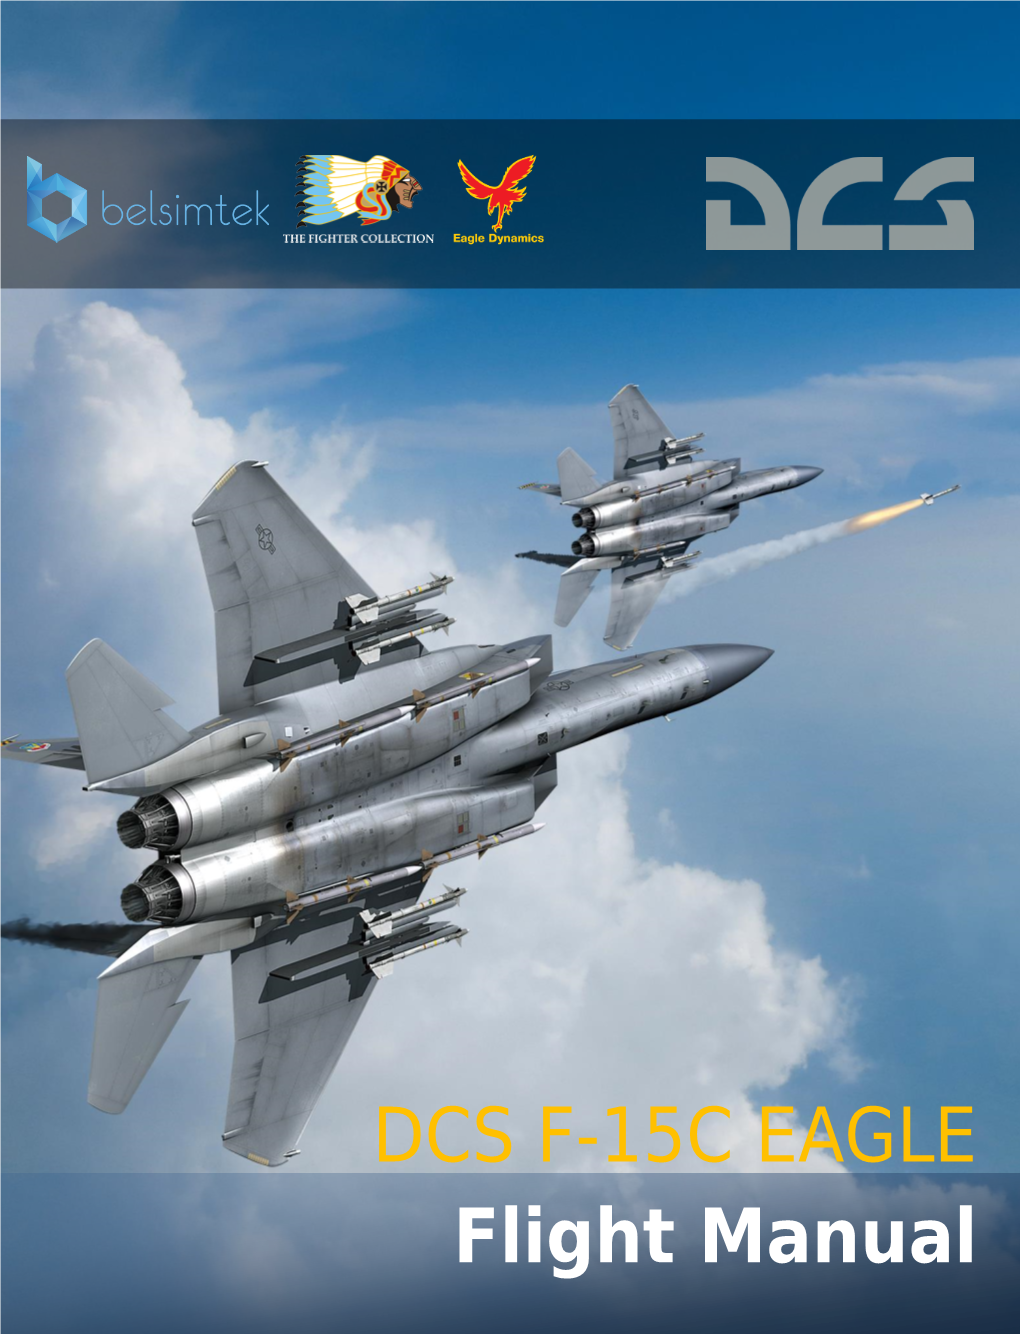 DCS F-15C EAGLE Flight Manual